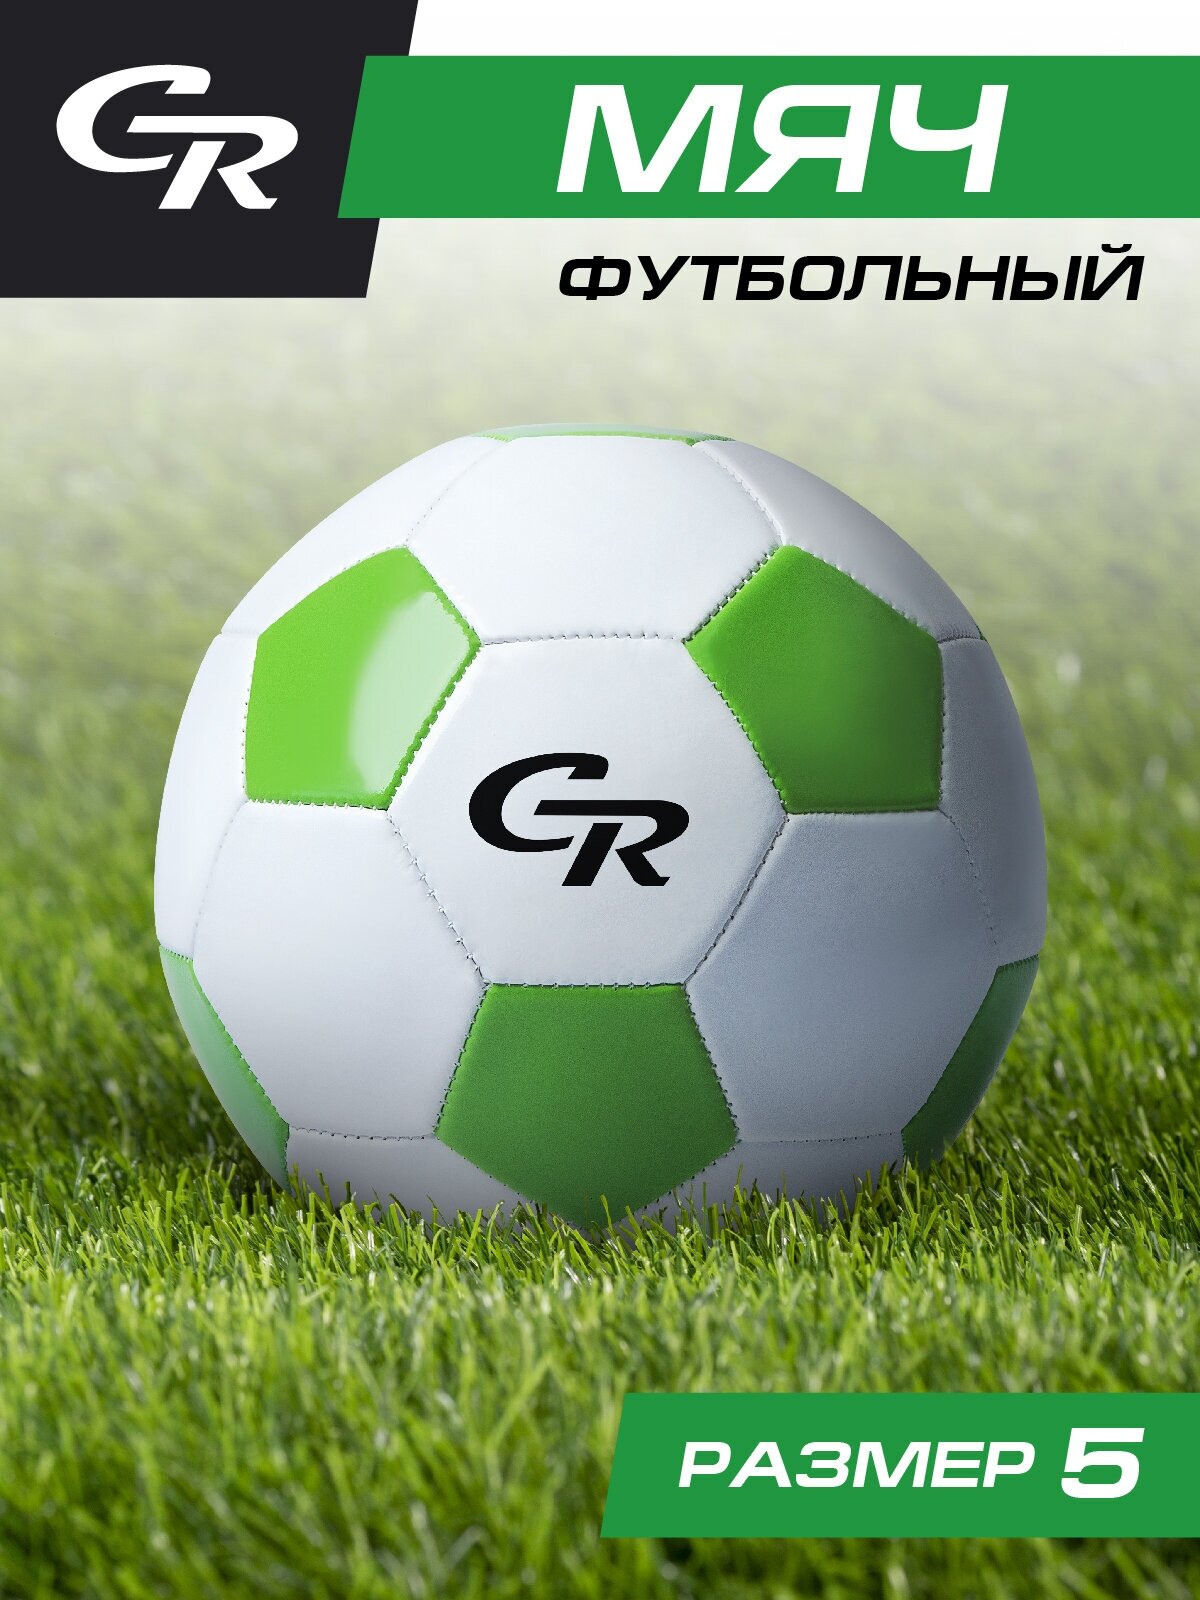 Мяч футбольный ТМ CR, 2-слойный, сшитые панели, ПВХ, размер 5, диаметр 22, JB4300103/надутый